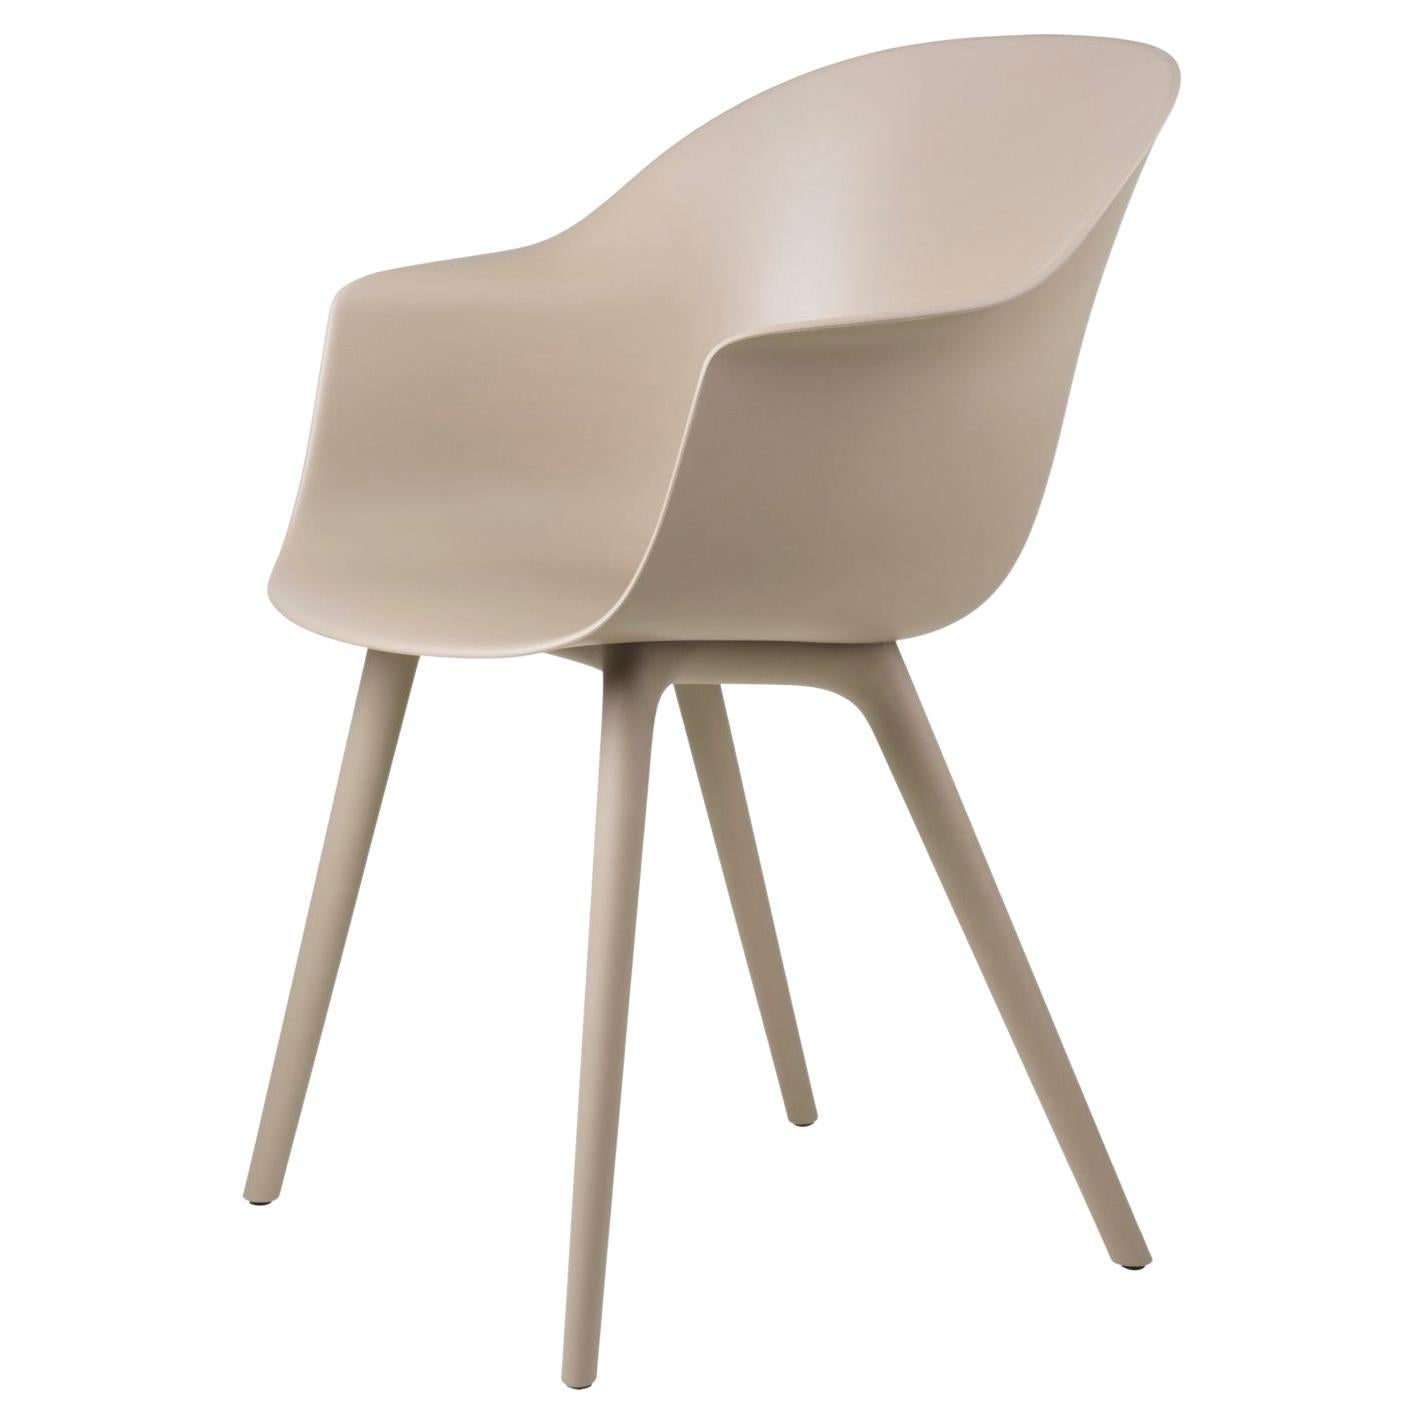 Le duo de designers danois et italiens GamFratesi a créé la Bat Chair en adoptant une approche scandinave de l'artisanat, de la simplicité et du fonctionnalisme. La coque enveloppante avec accoudoirs incarne à la fois l'esthétique et le confort,